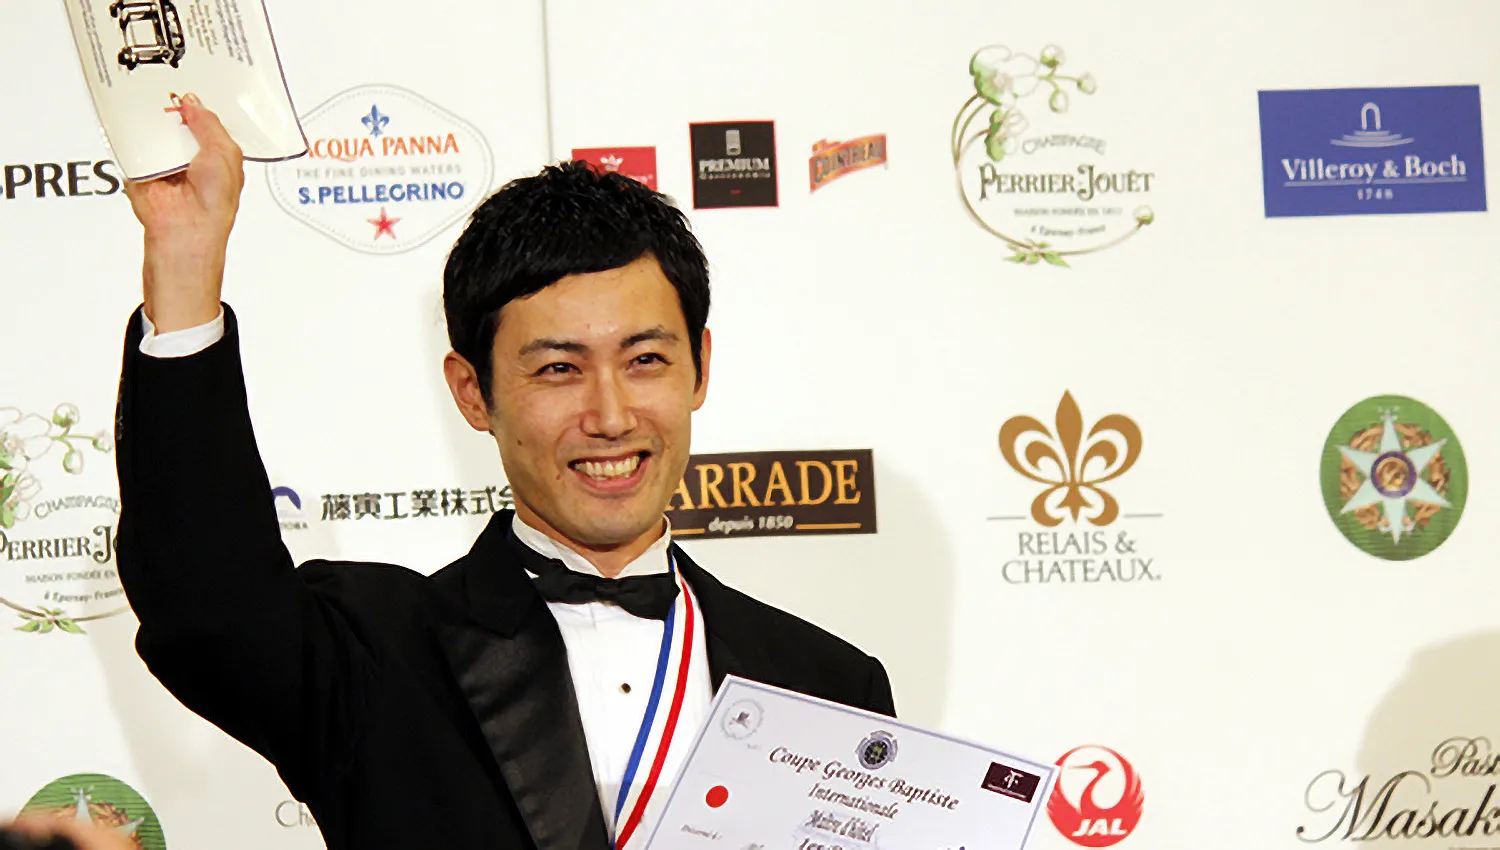 「クープ・ジョルジュ・バティスト」サーヴィス世界コンクールで表彰されている宮崎辰